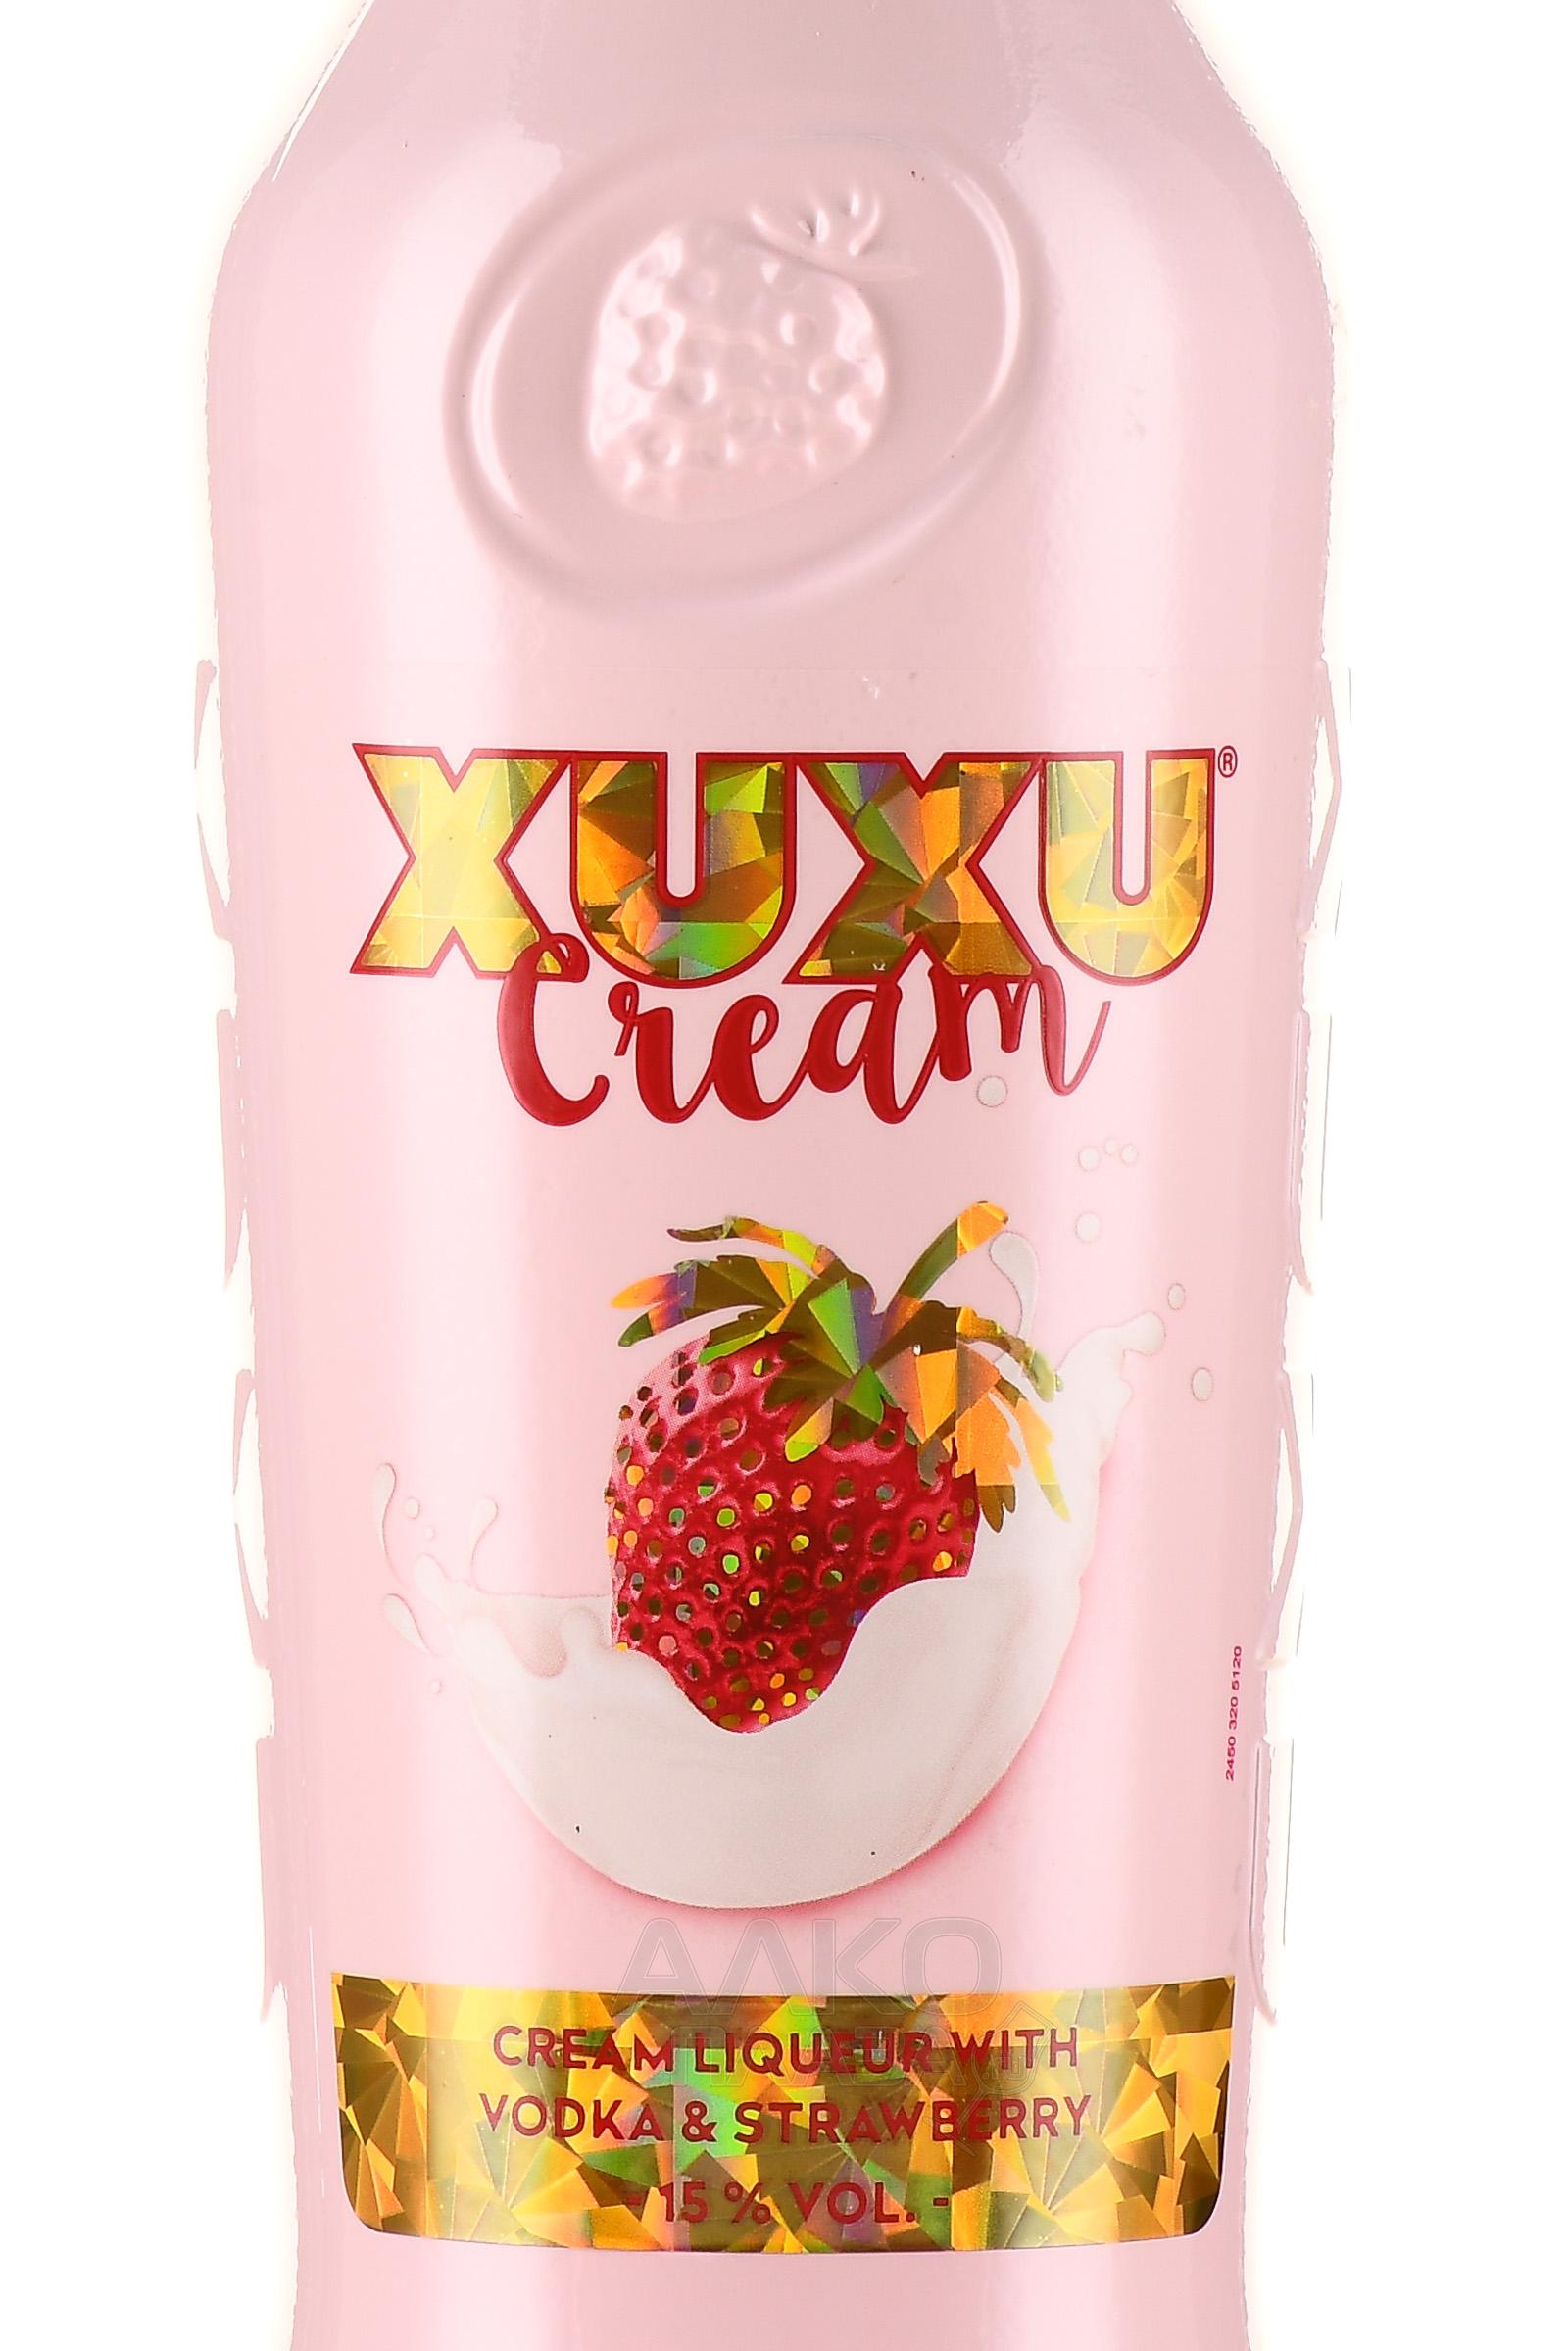 0.7 Ксу-Ксу эмульсионный л ликер - XUXU Cream Крем цена - купить